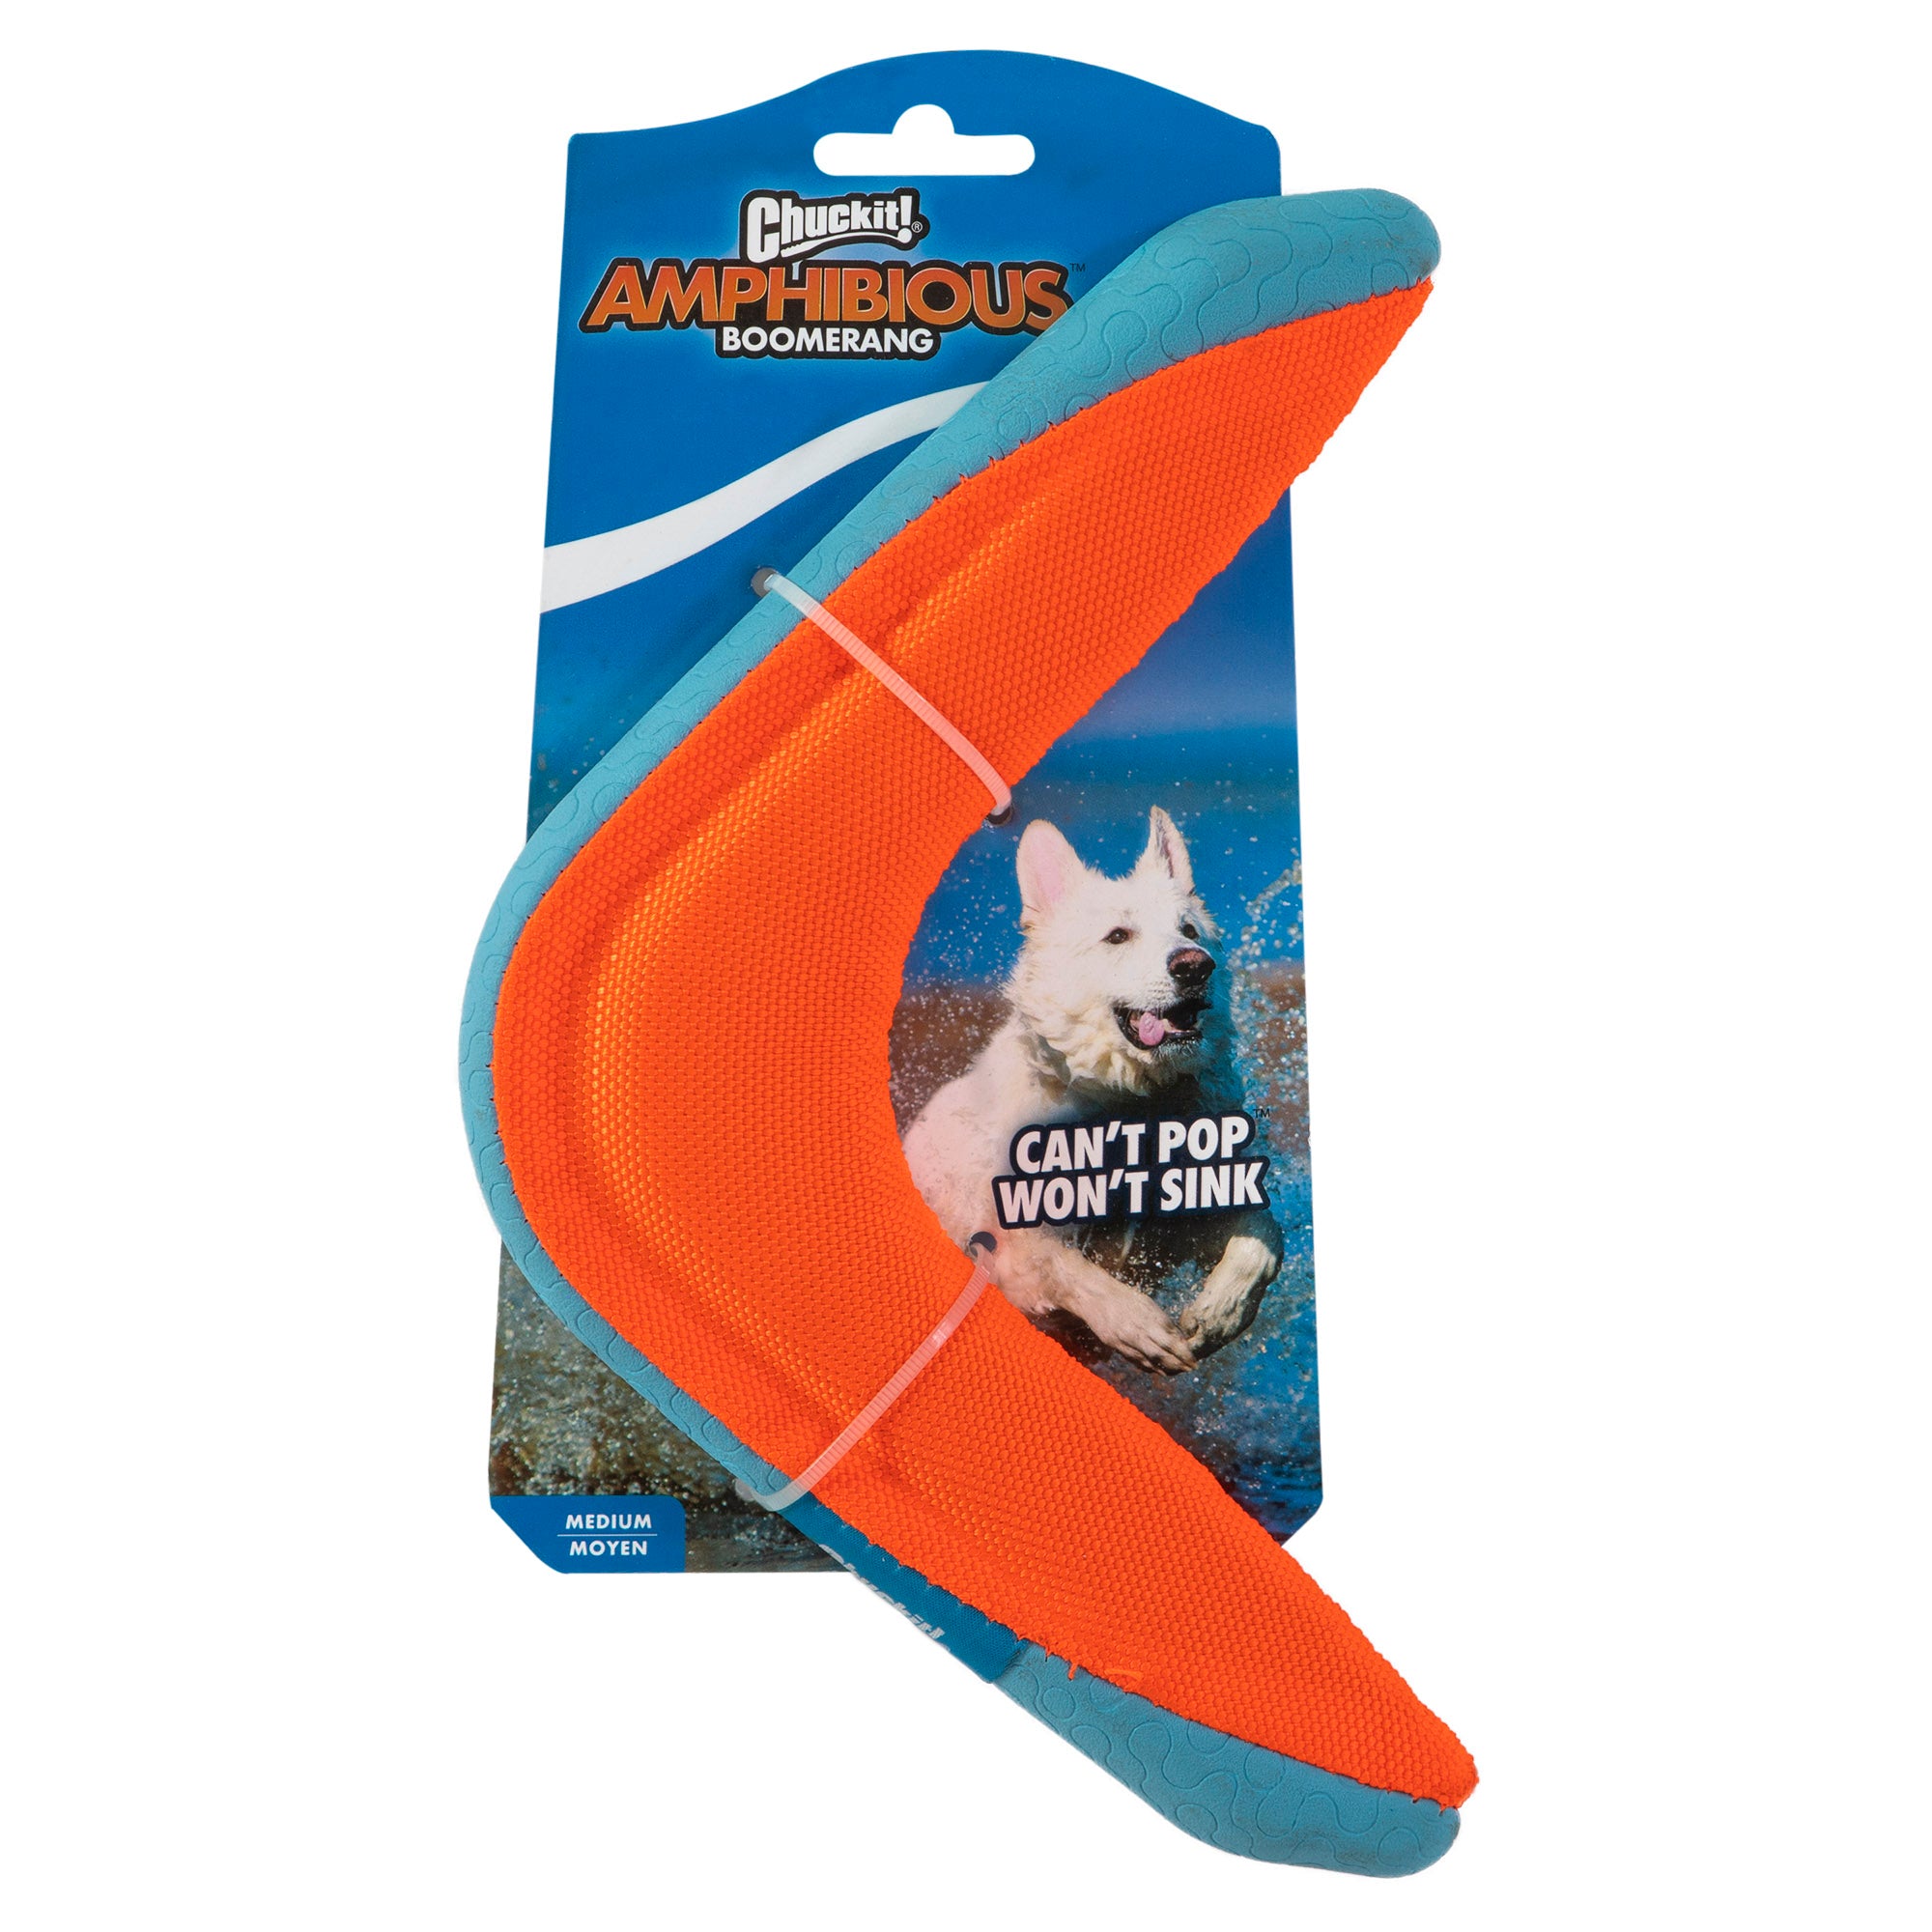 Amphibious Boomerang Medium